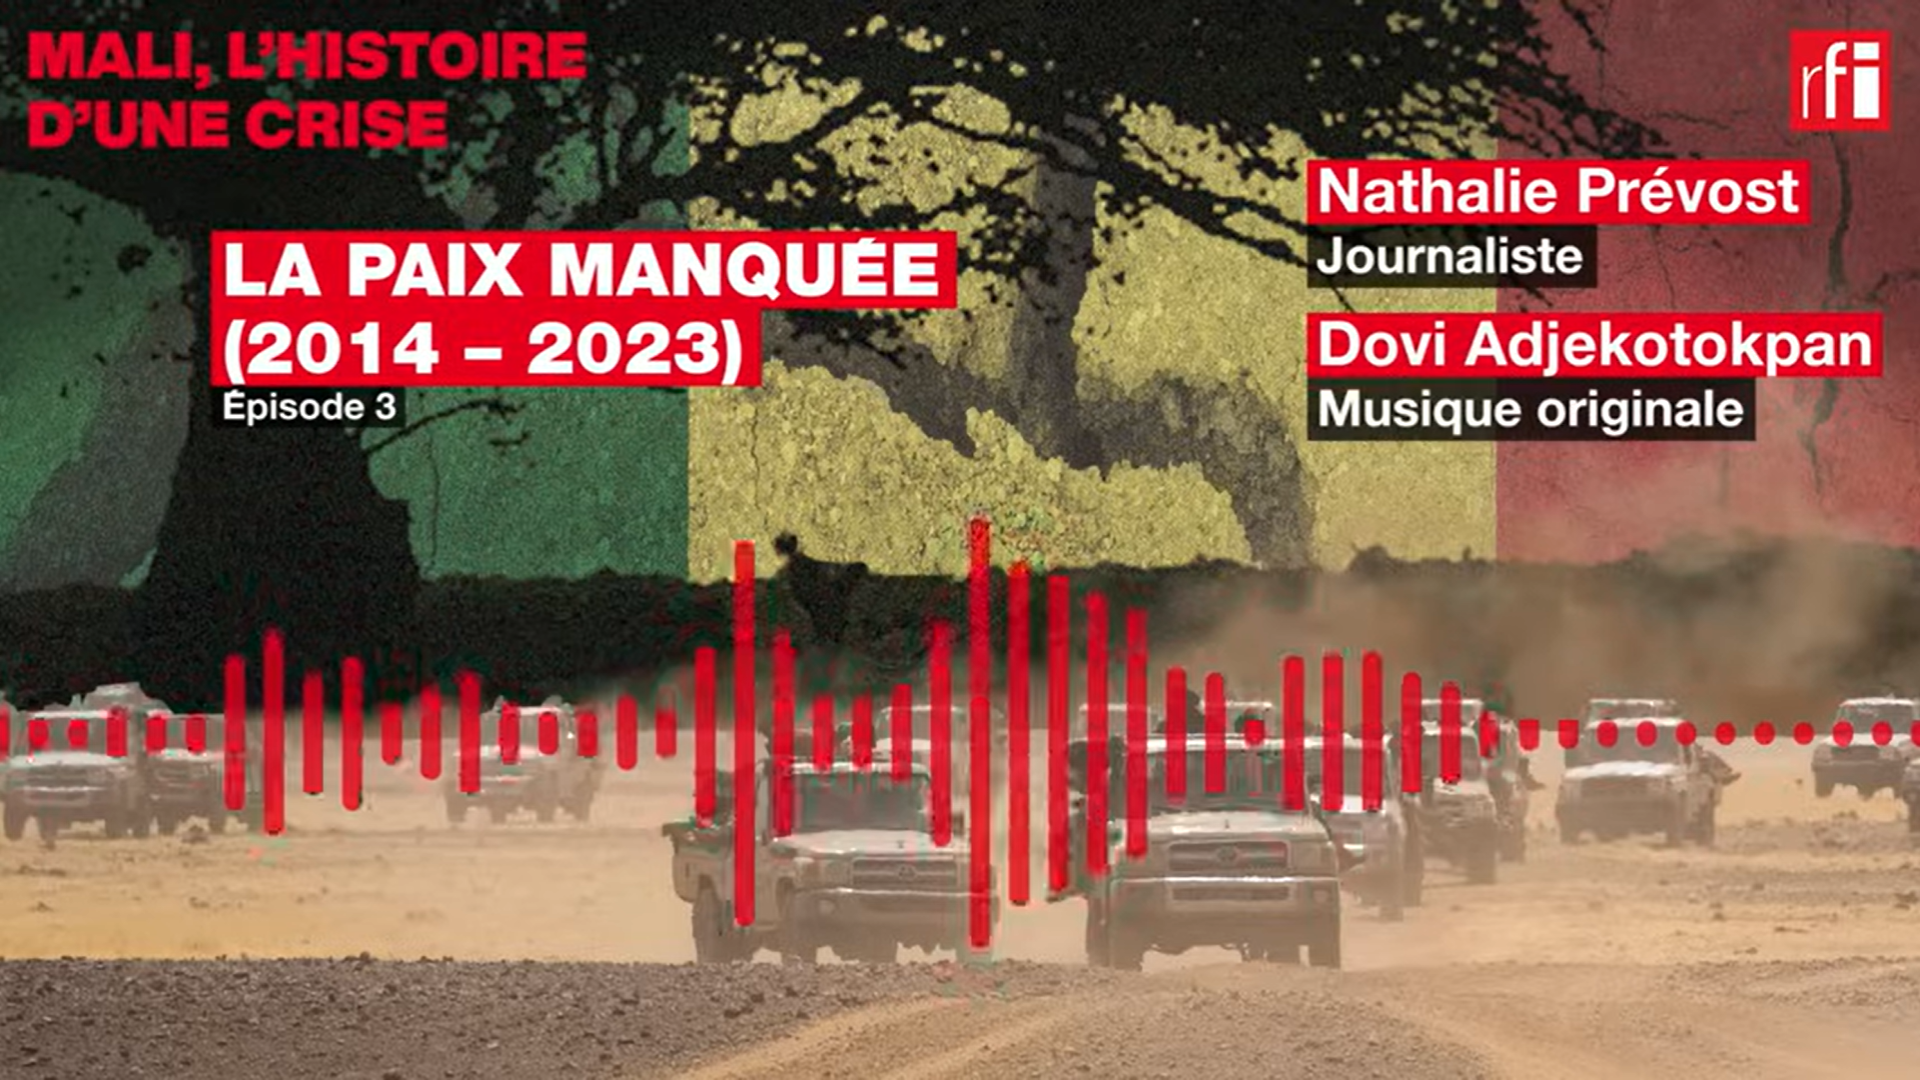 Miniature Mali, l'histoire d'une crise : 3/3 - La paix manquée (2014 – 2023)